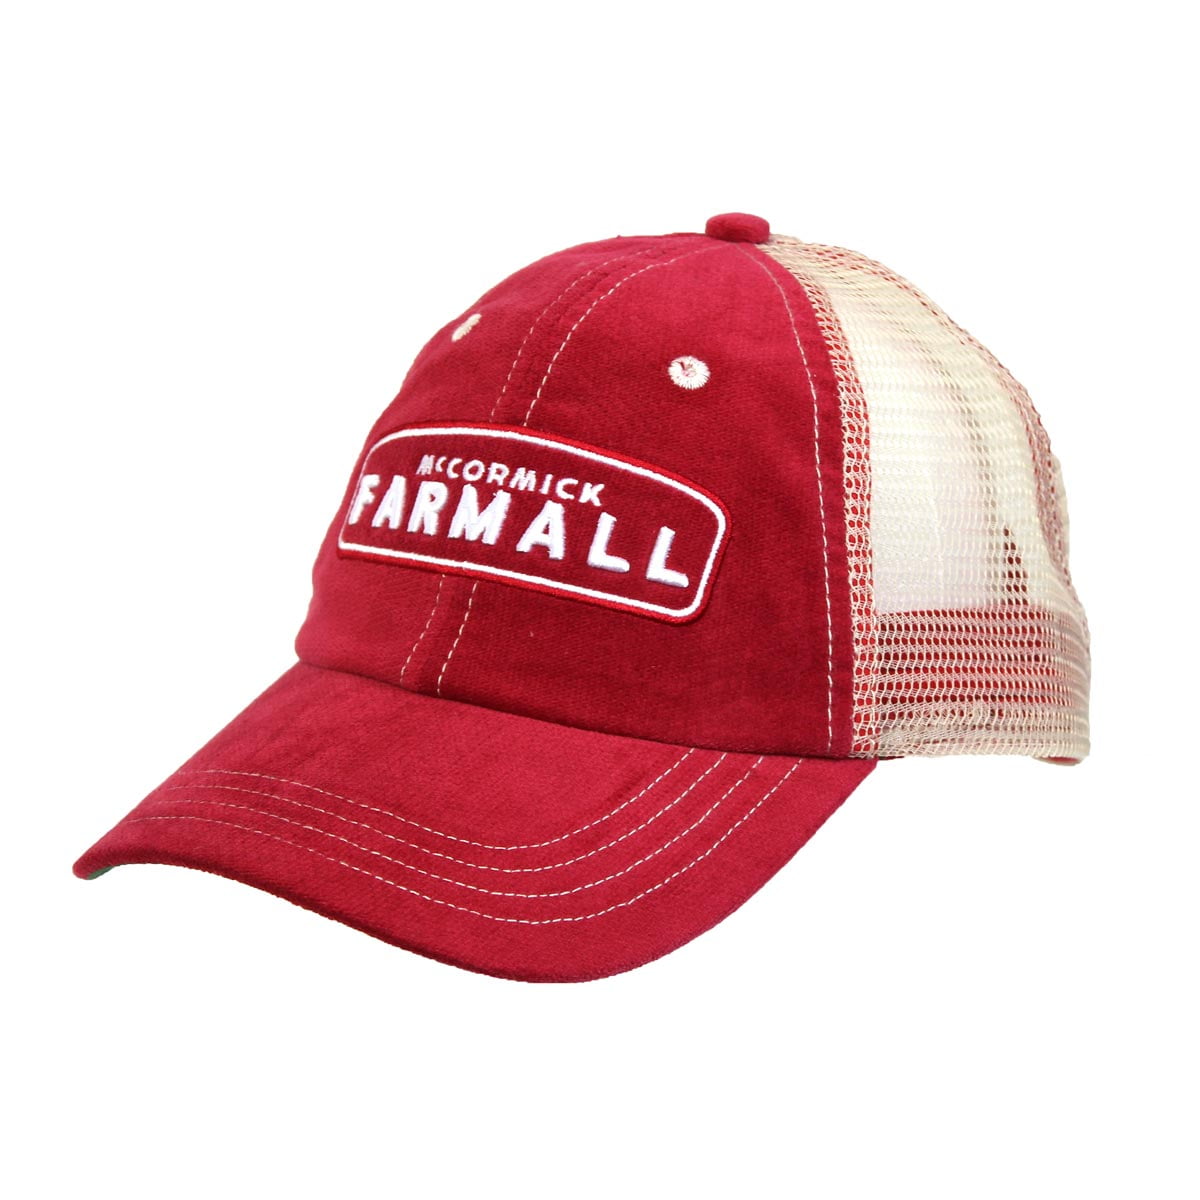 McCormick Farmall Red and Cream Mesh Back Cap A2827 - Walmart.com ...